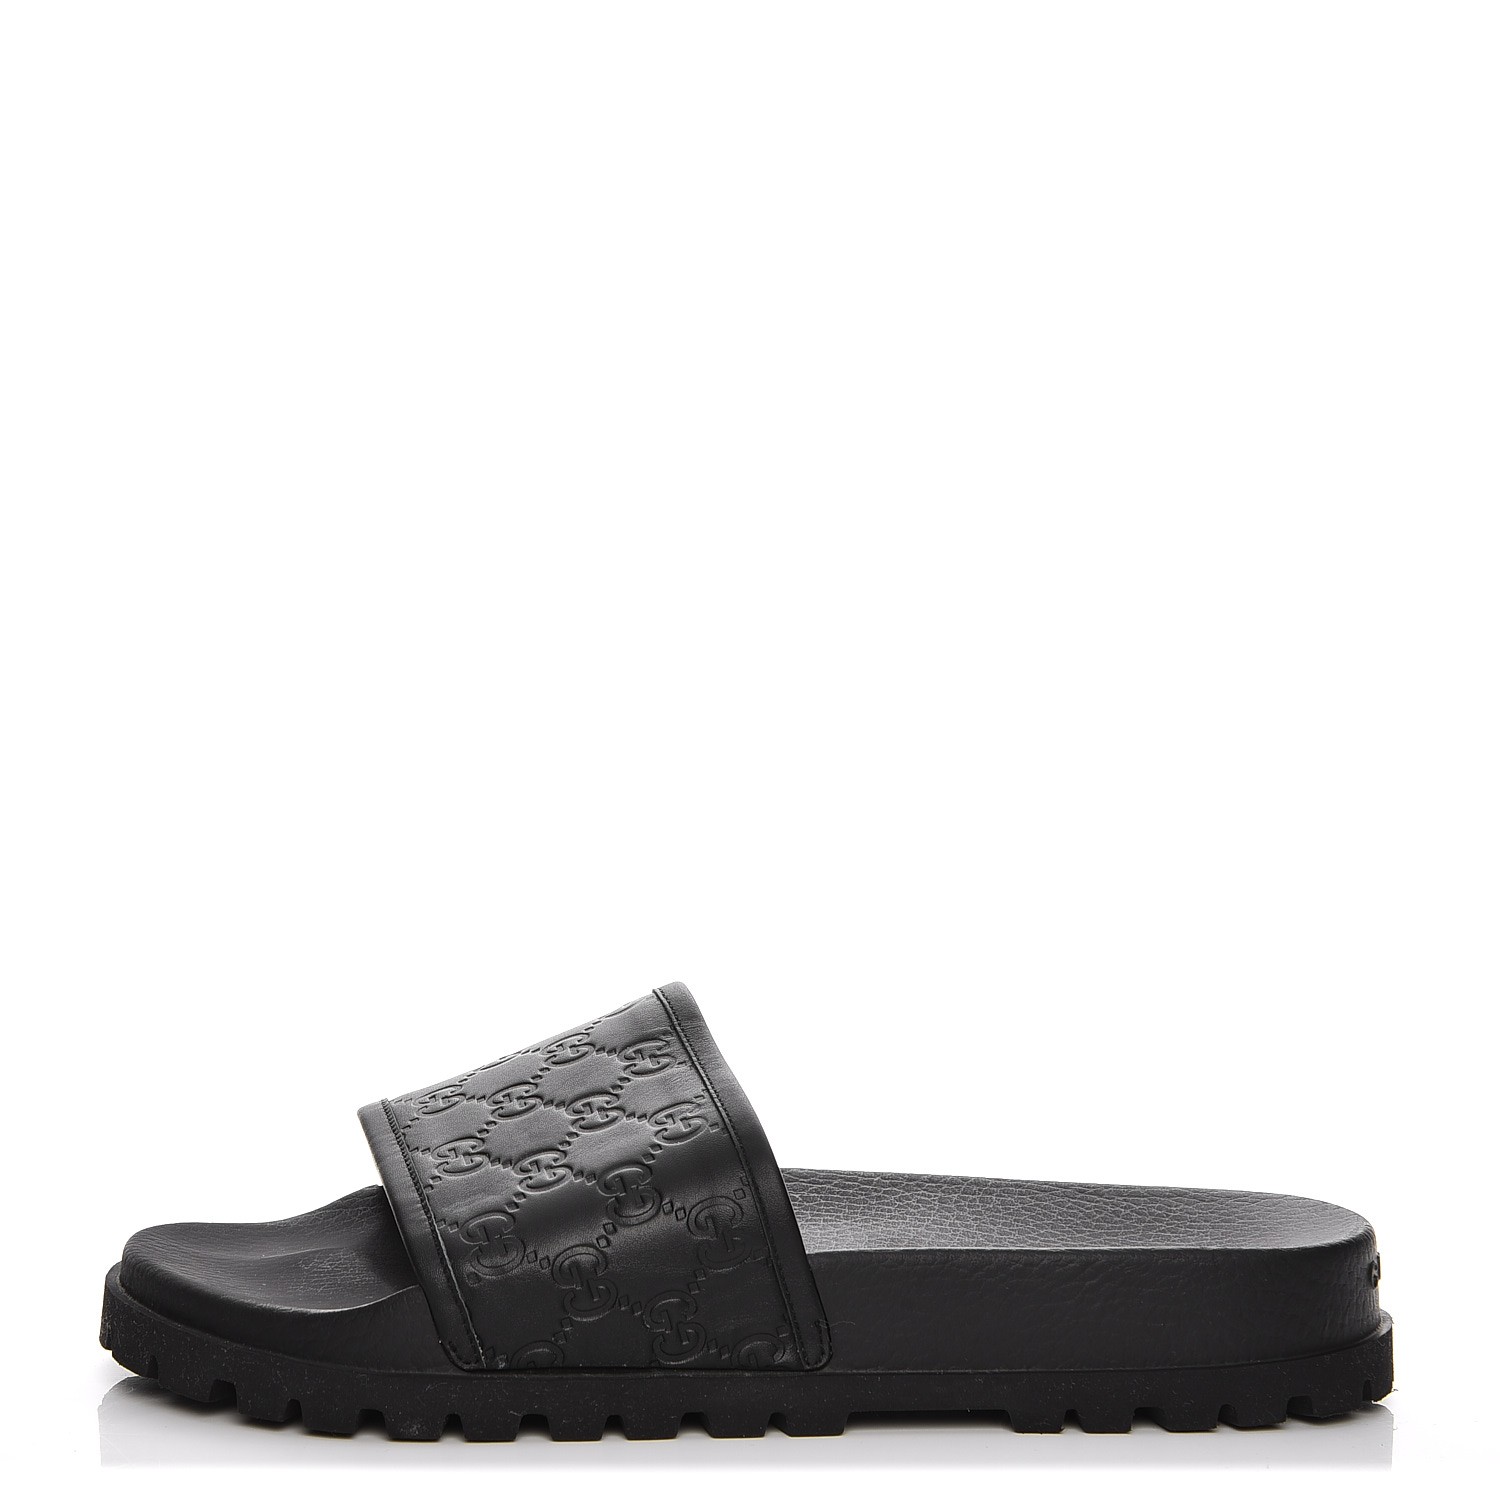 all black gucci sandals, OFF 76%,www 